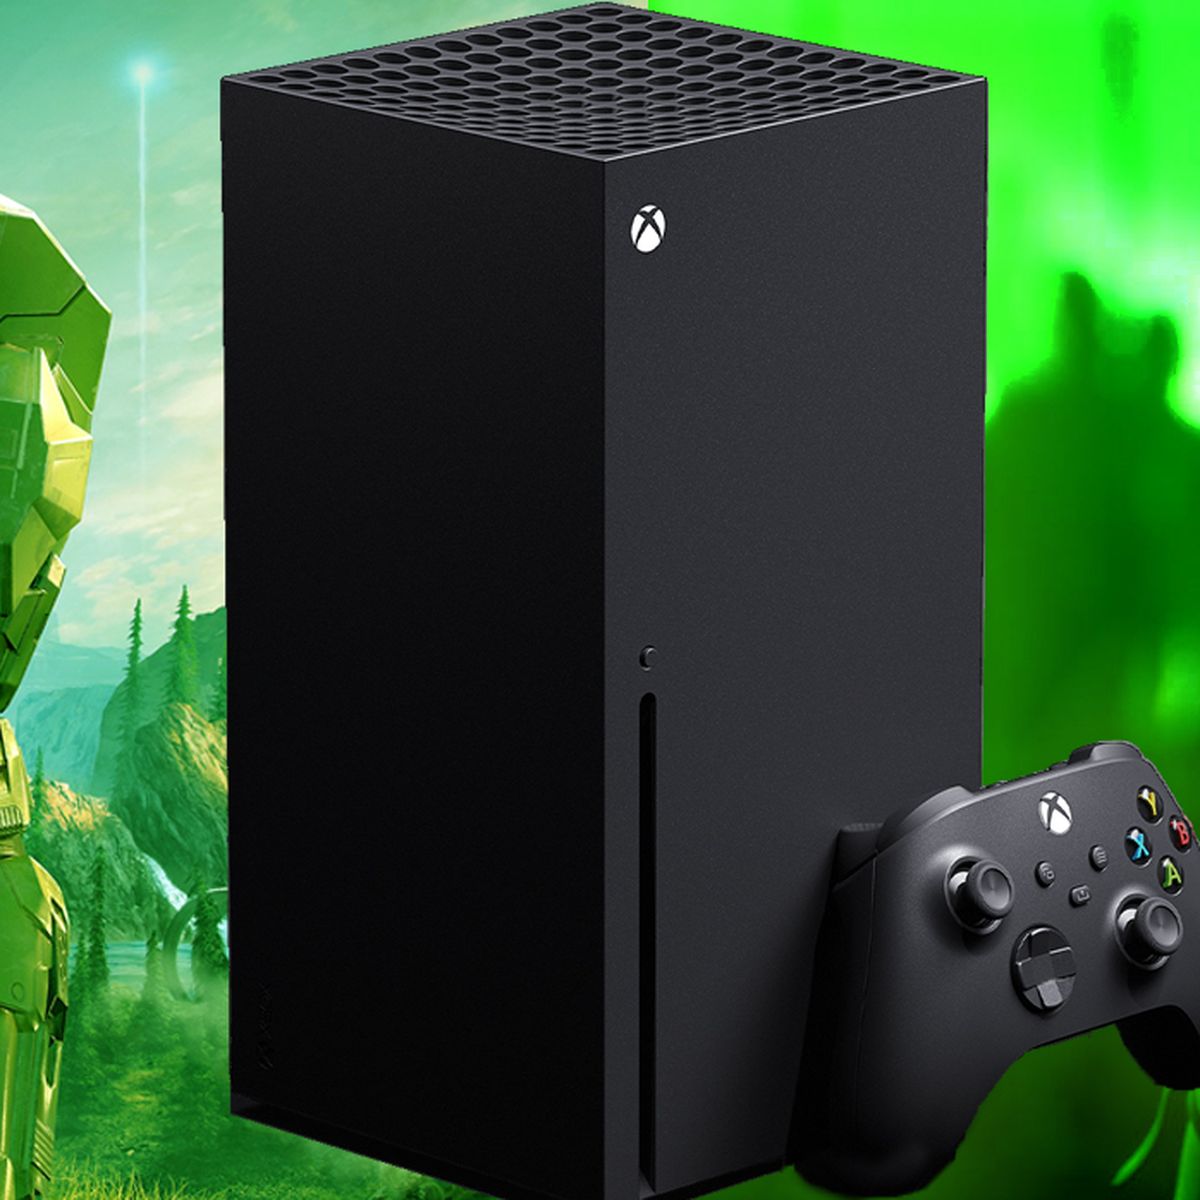 Se confirma la existencia de la Xbox Series S junto al mando de color blanco